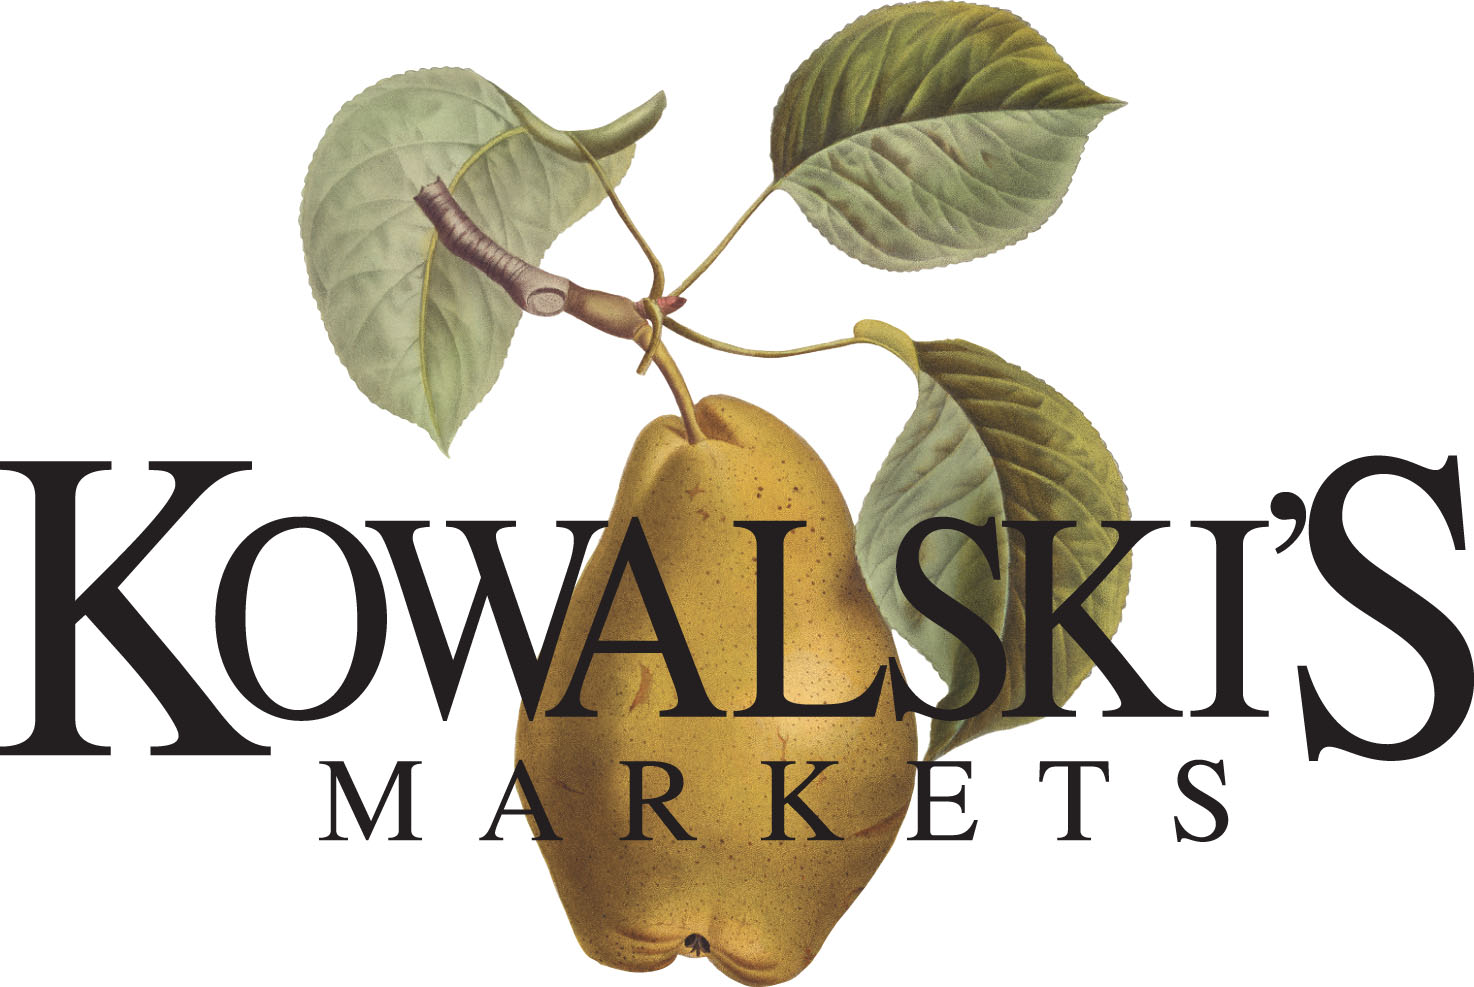 Kowalskis Market